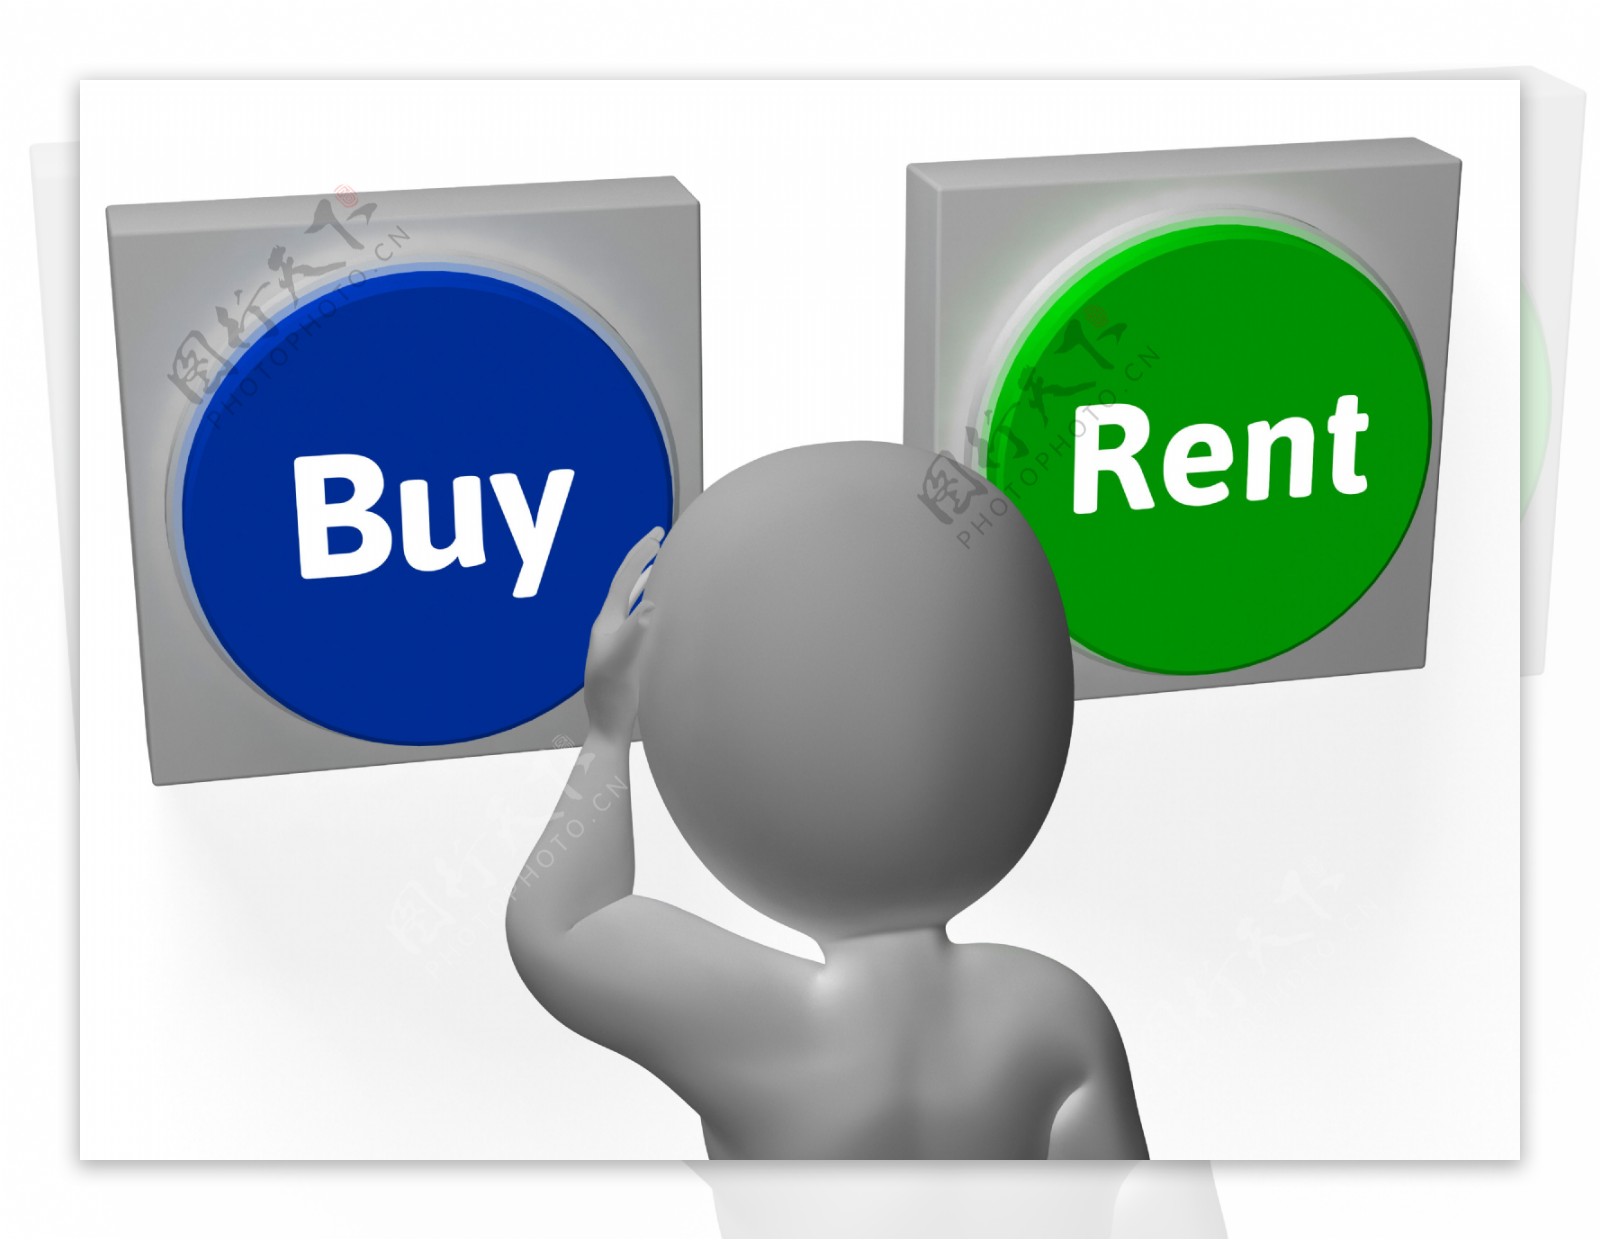 购租按钮显示为出售或出租的财产